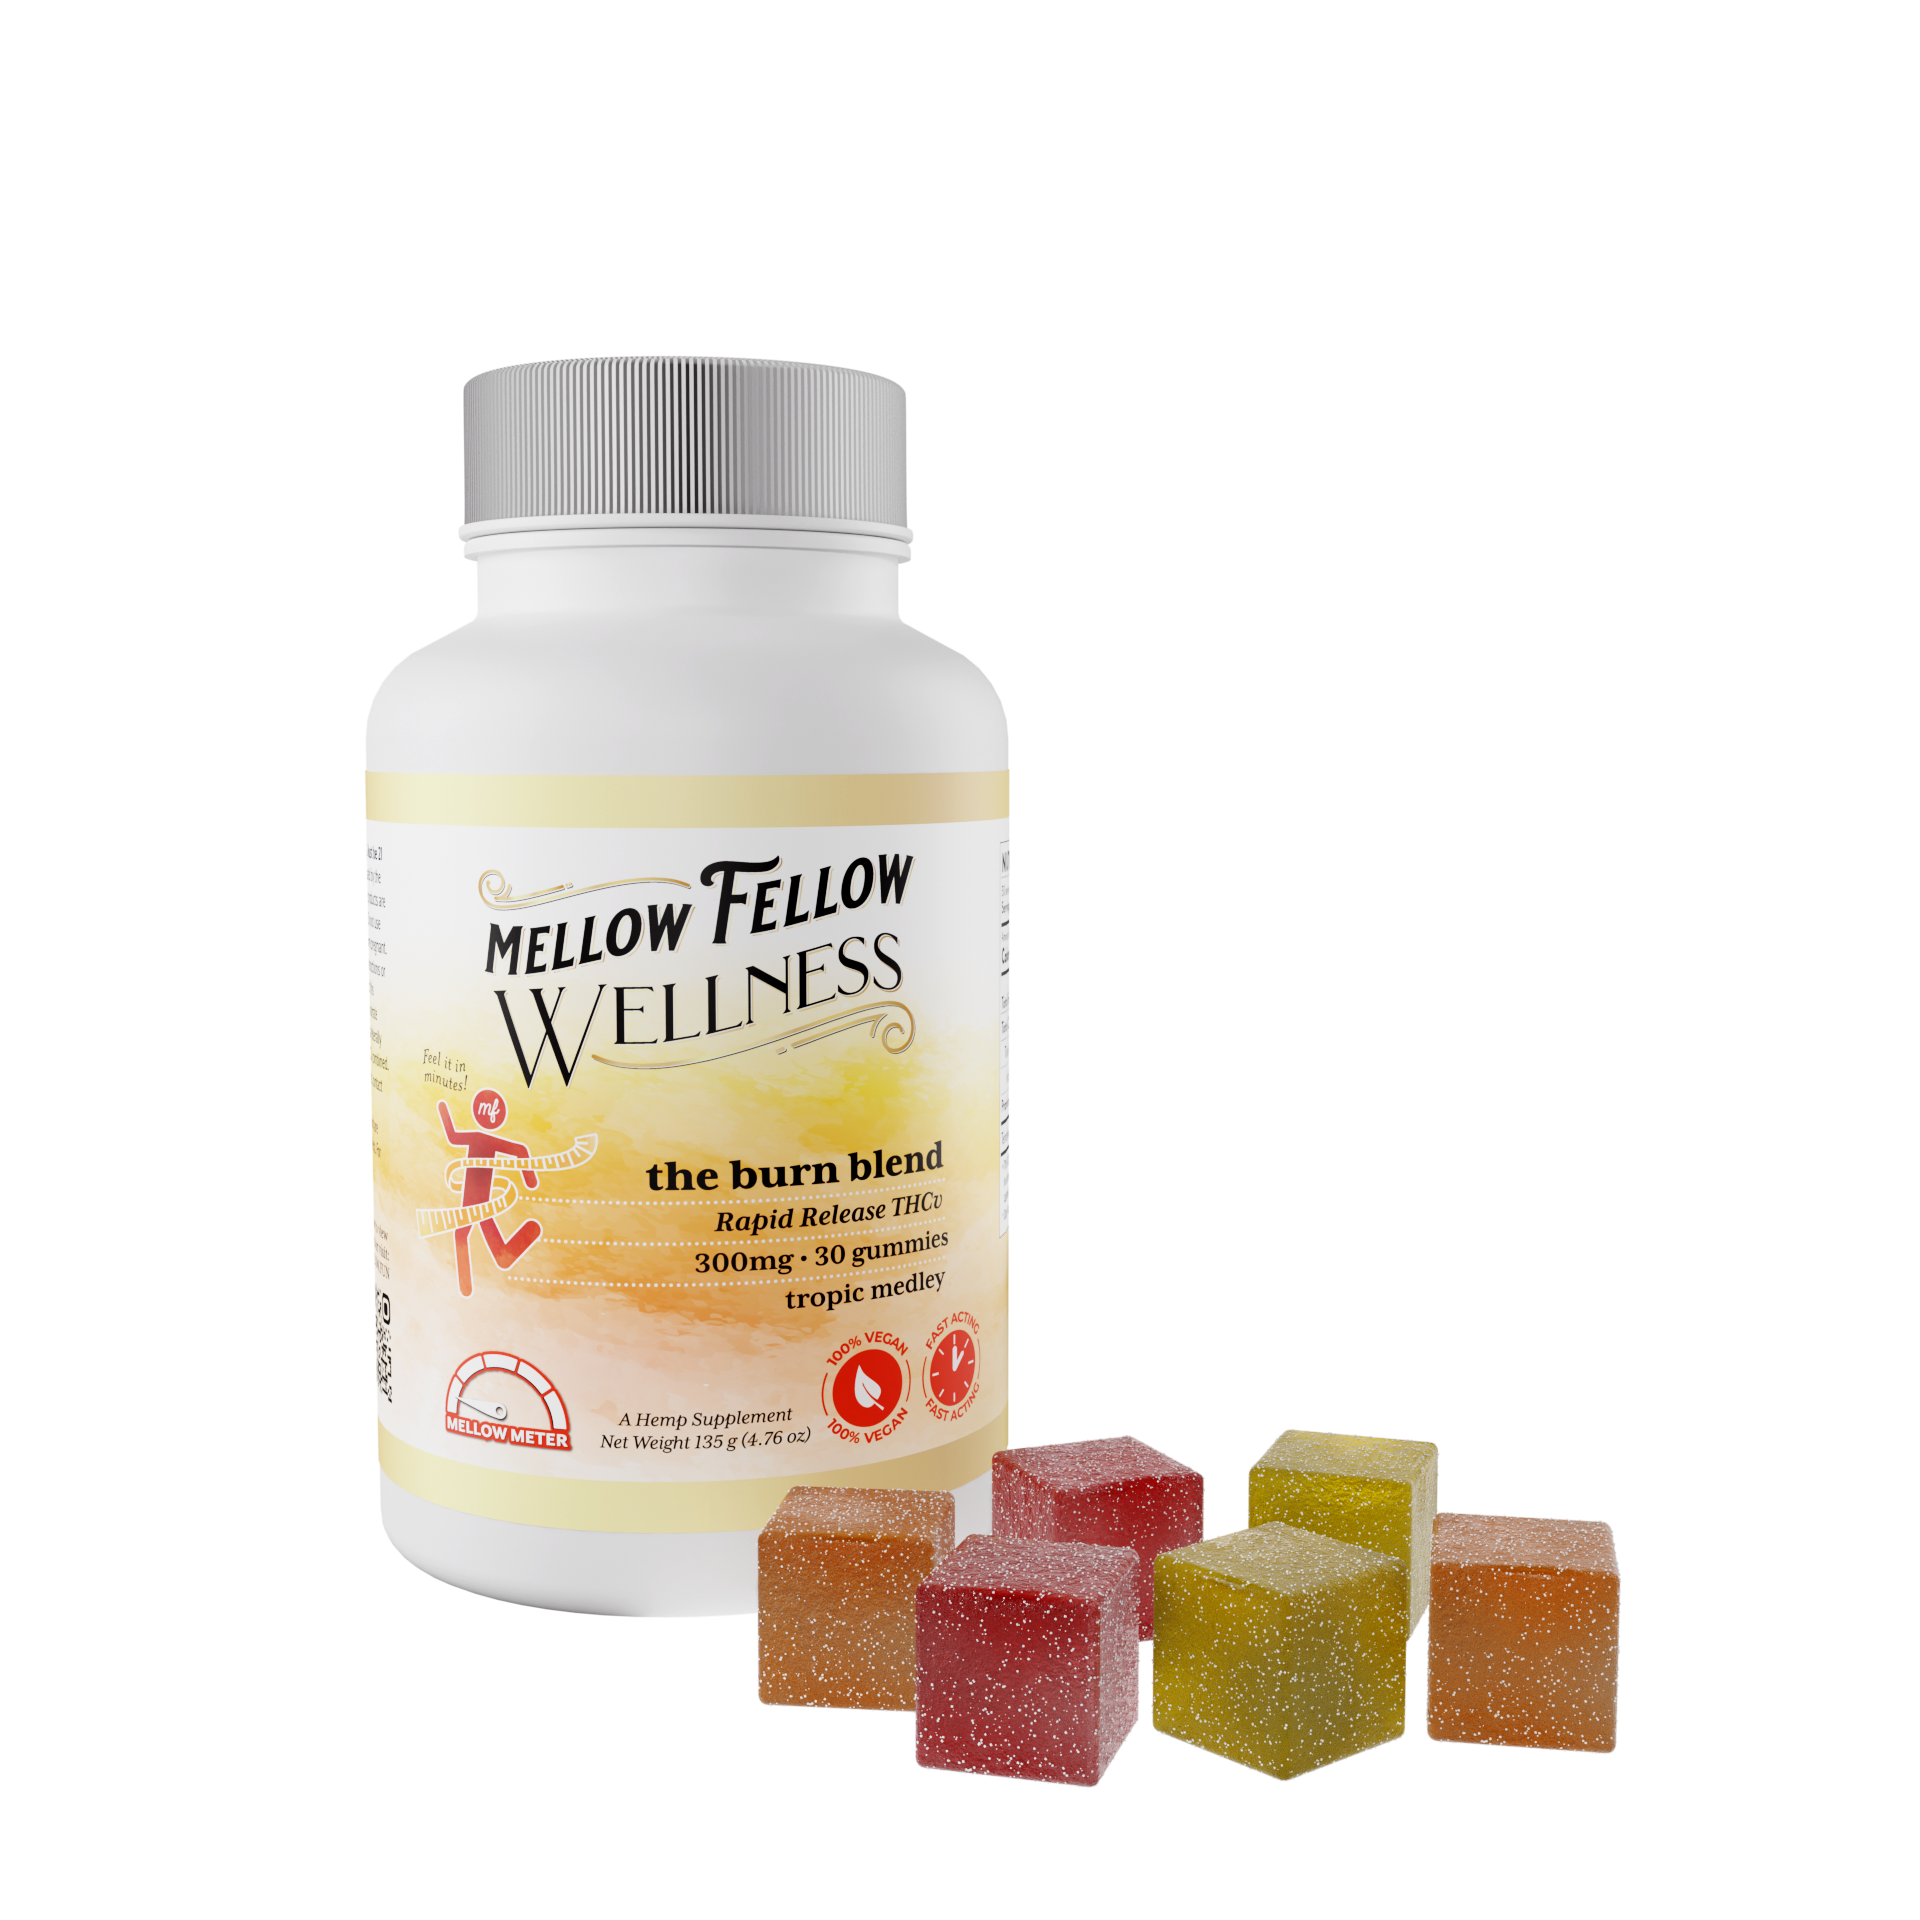 Mellow Fellow Wellness - Gummies - 300mg - Burn Blend - Tropic Medley Best Price